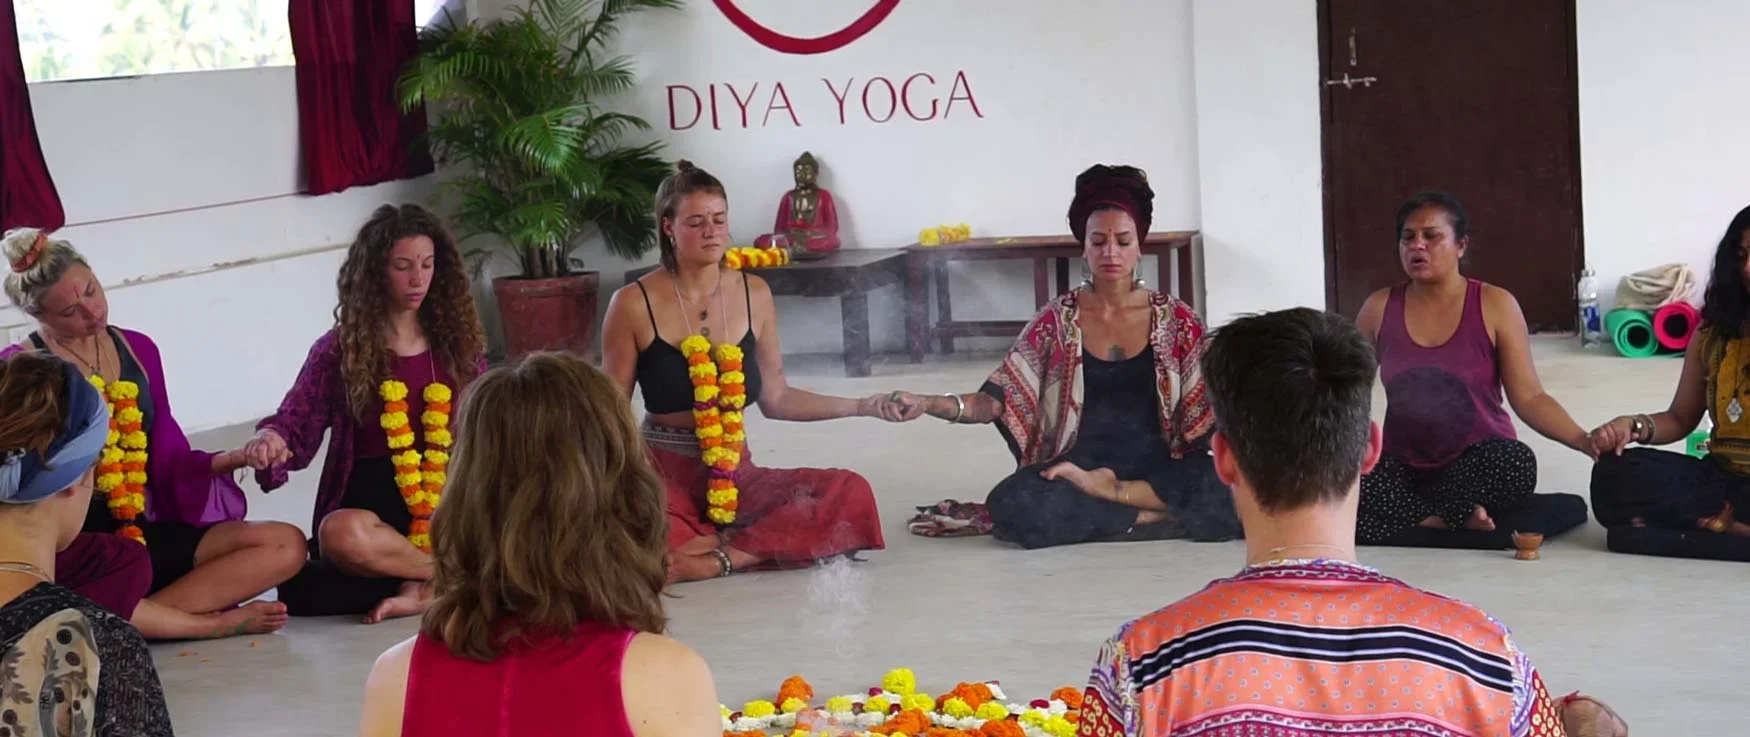 100 Hours Yoga Teacher Training Course by Diya Yoga Goa, India6.webp